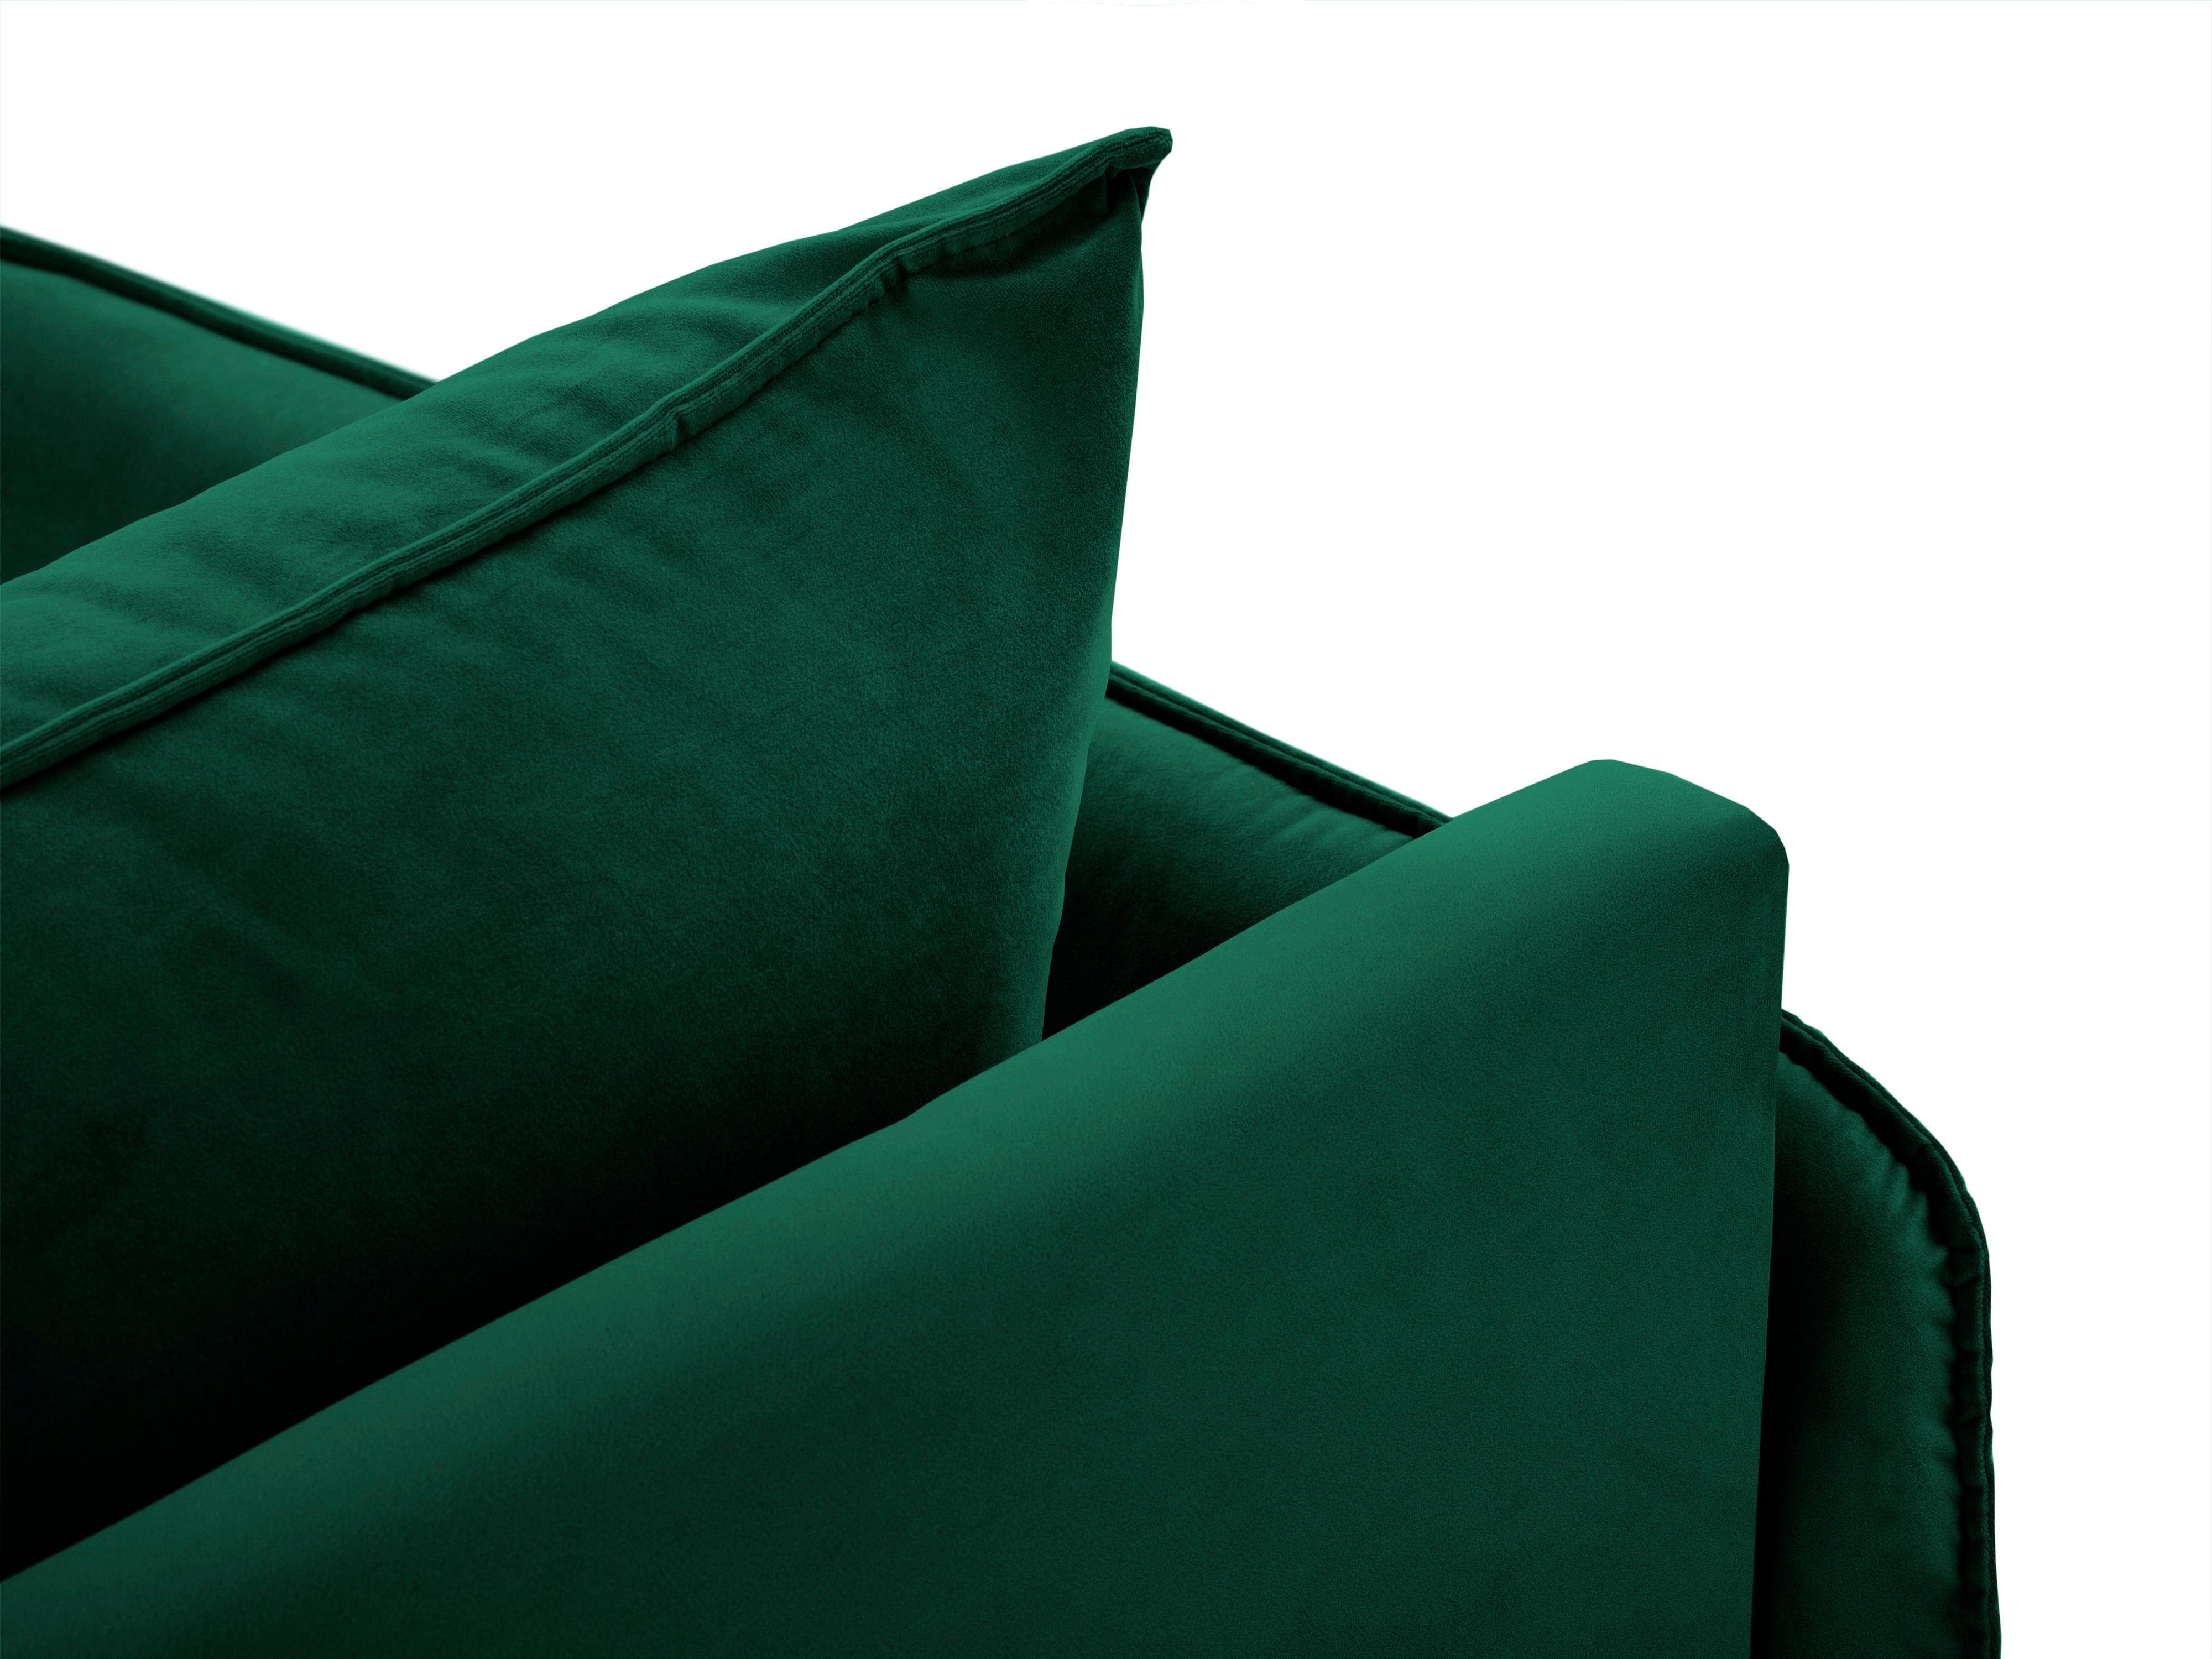 Szezlong aksamitny lewostronny VIENNA zielony z czarną podstawą, Cosmopolitan Design, Eye on Design